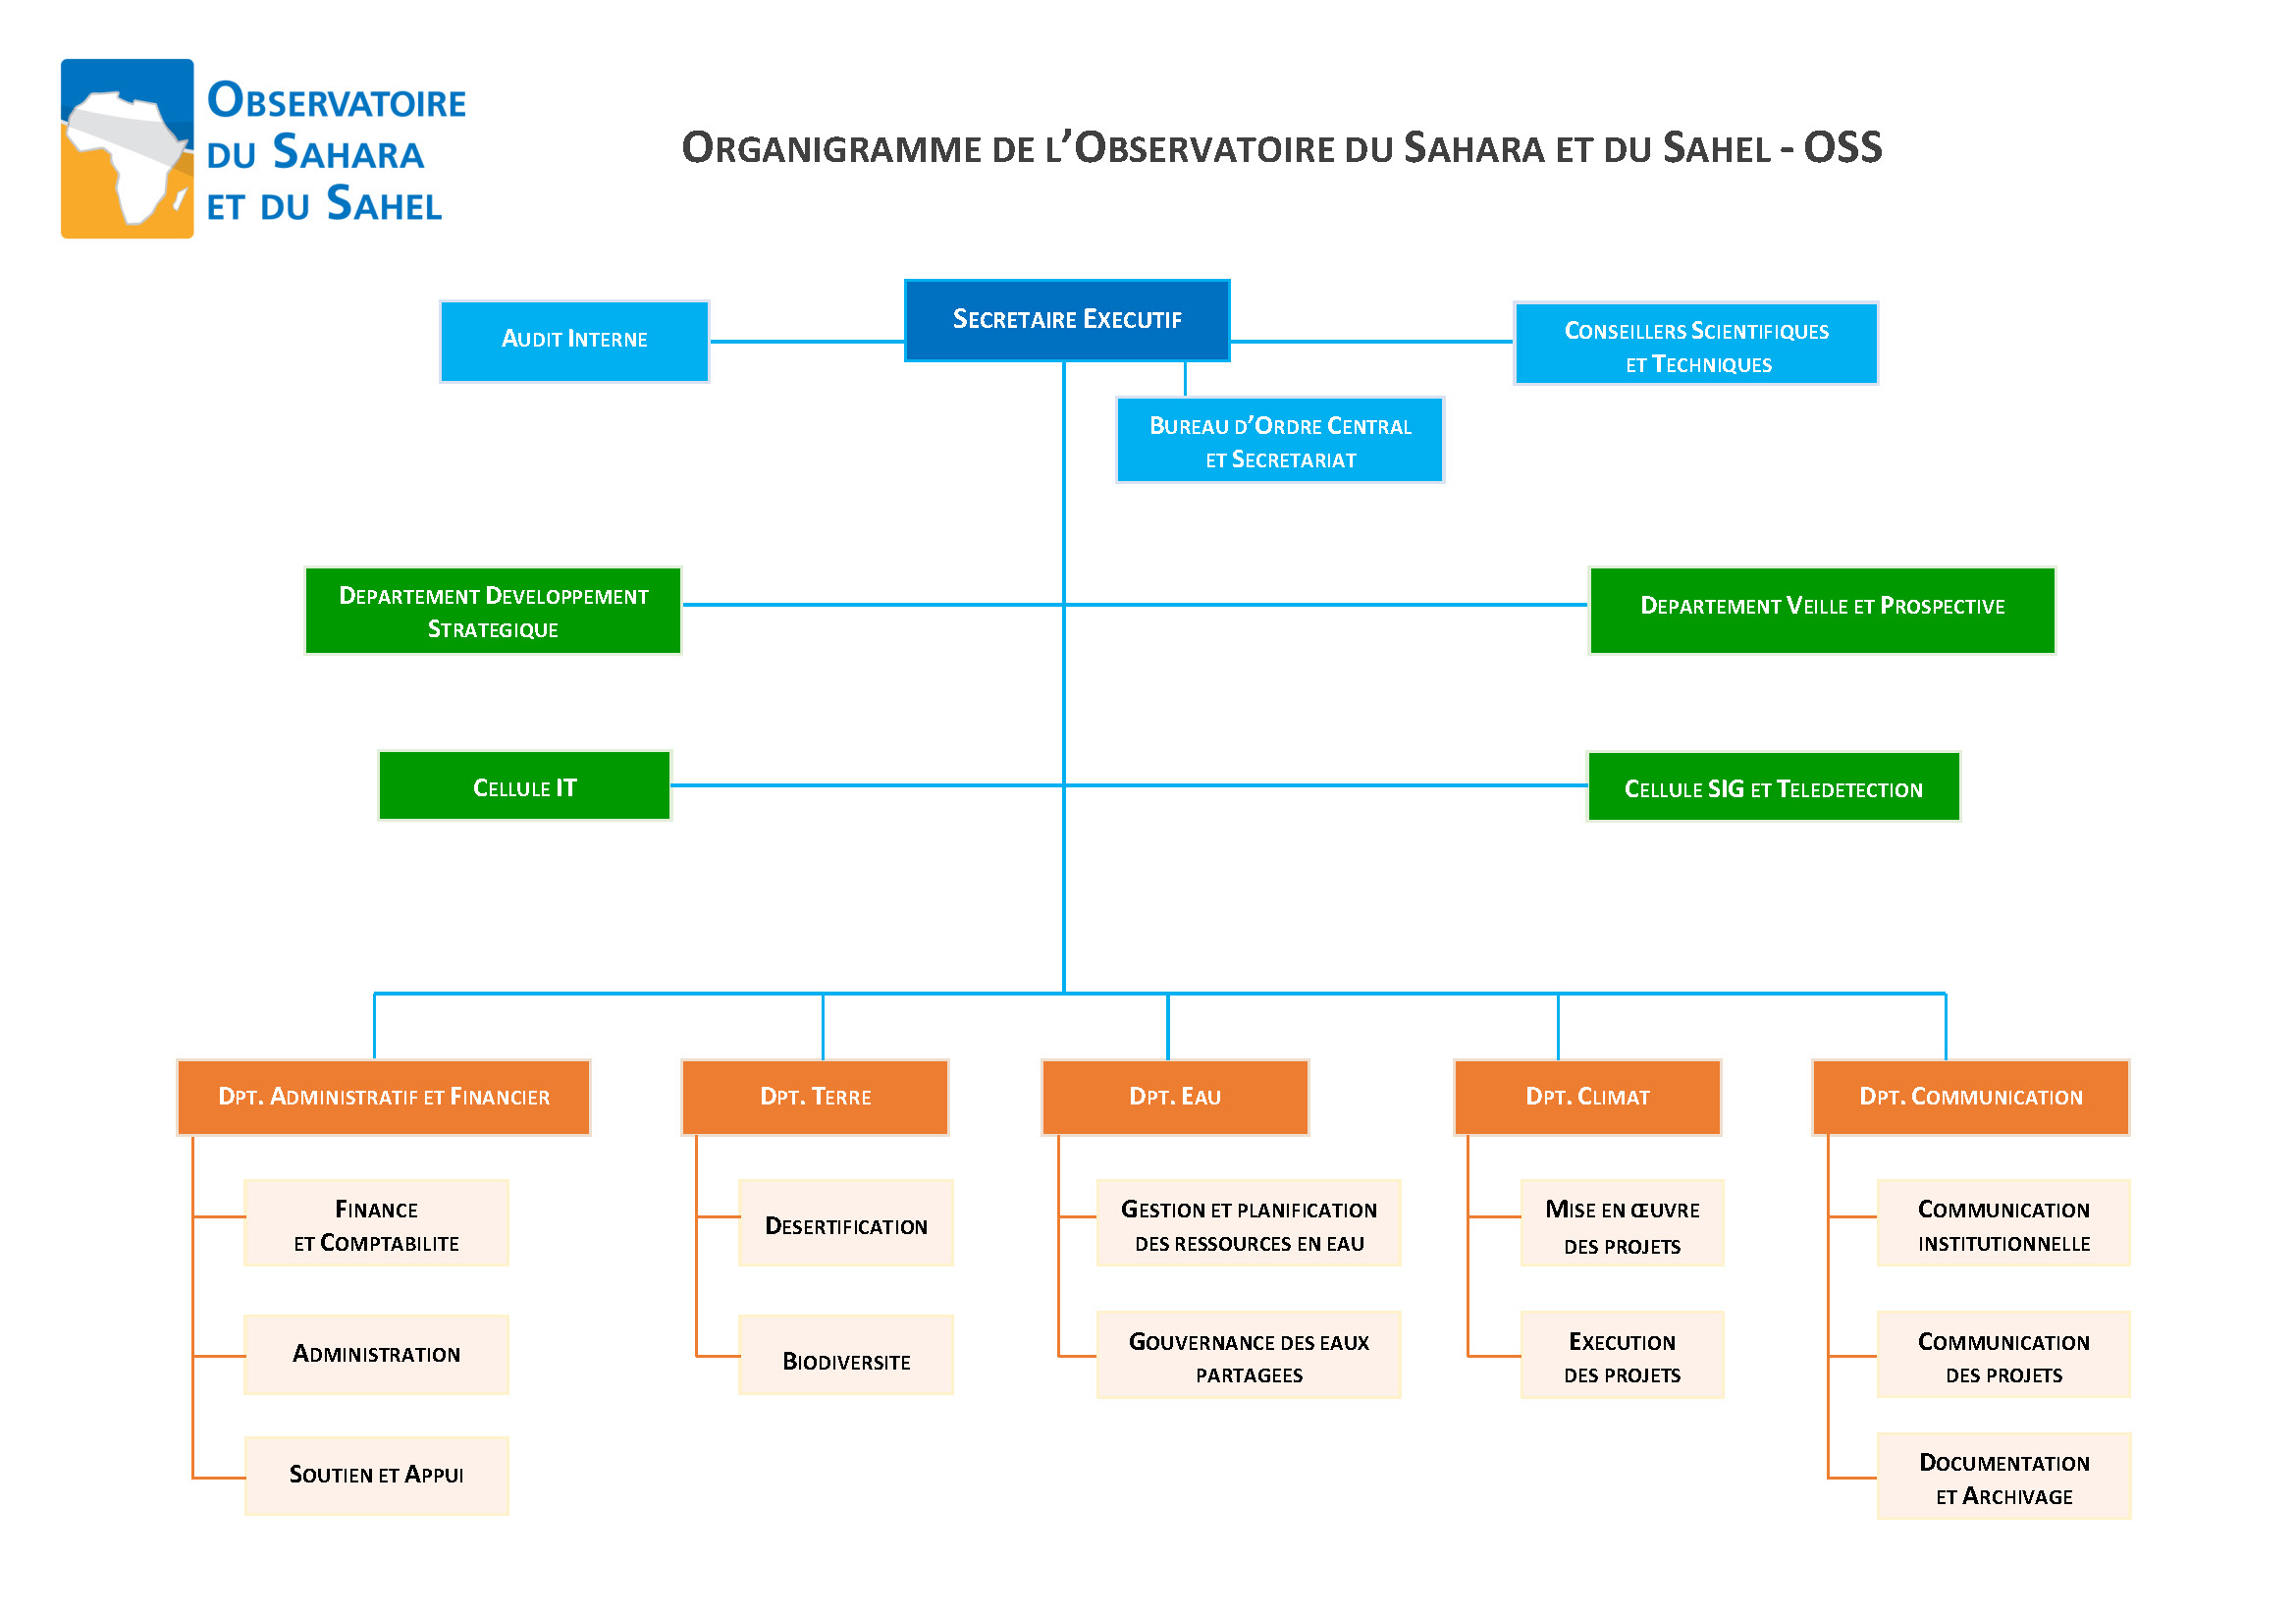 Organigramme de l'OSS